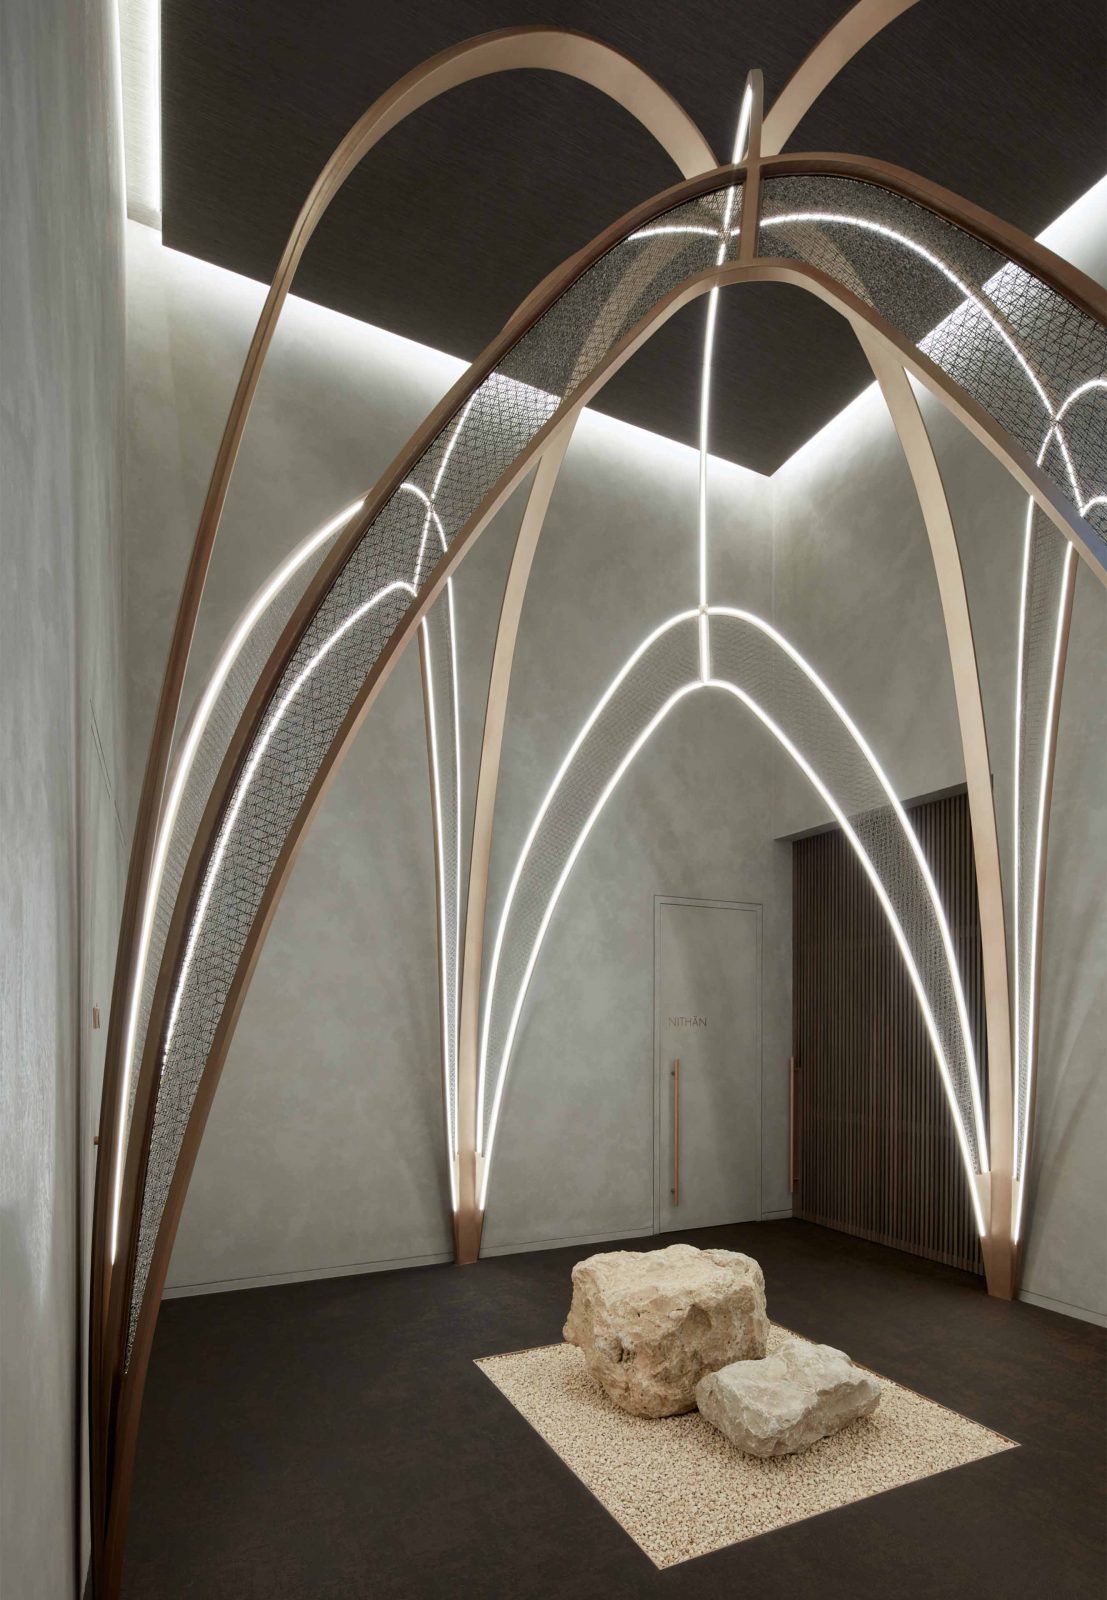 Lighting Design Illuminated Feature Arches SensAsia Stories Luxury Spa Dubai Consultants Studio N